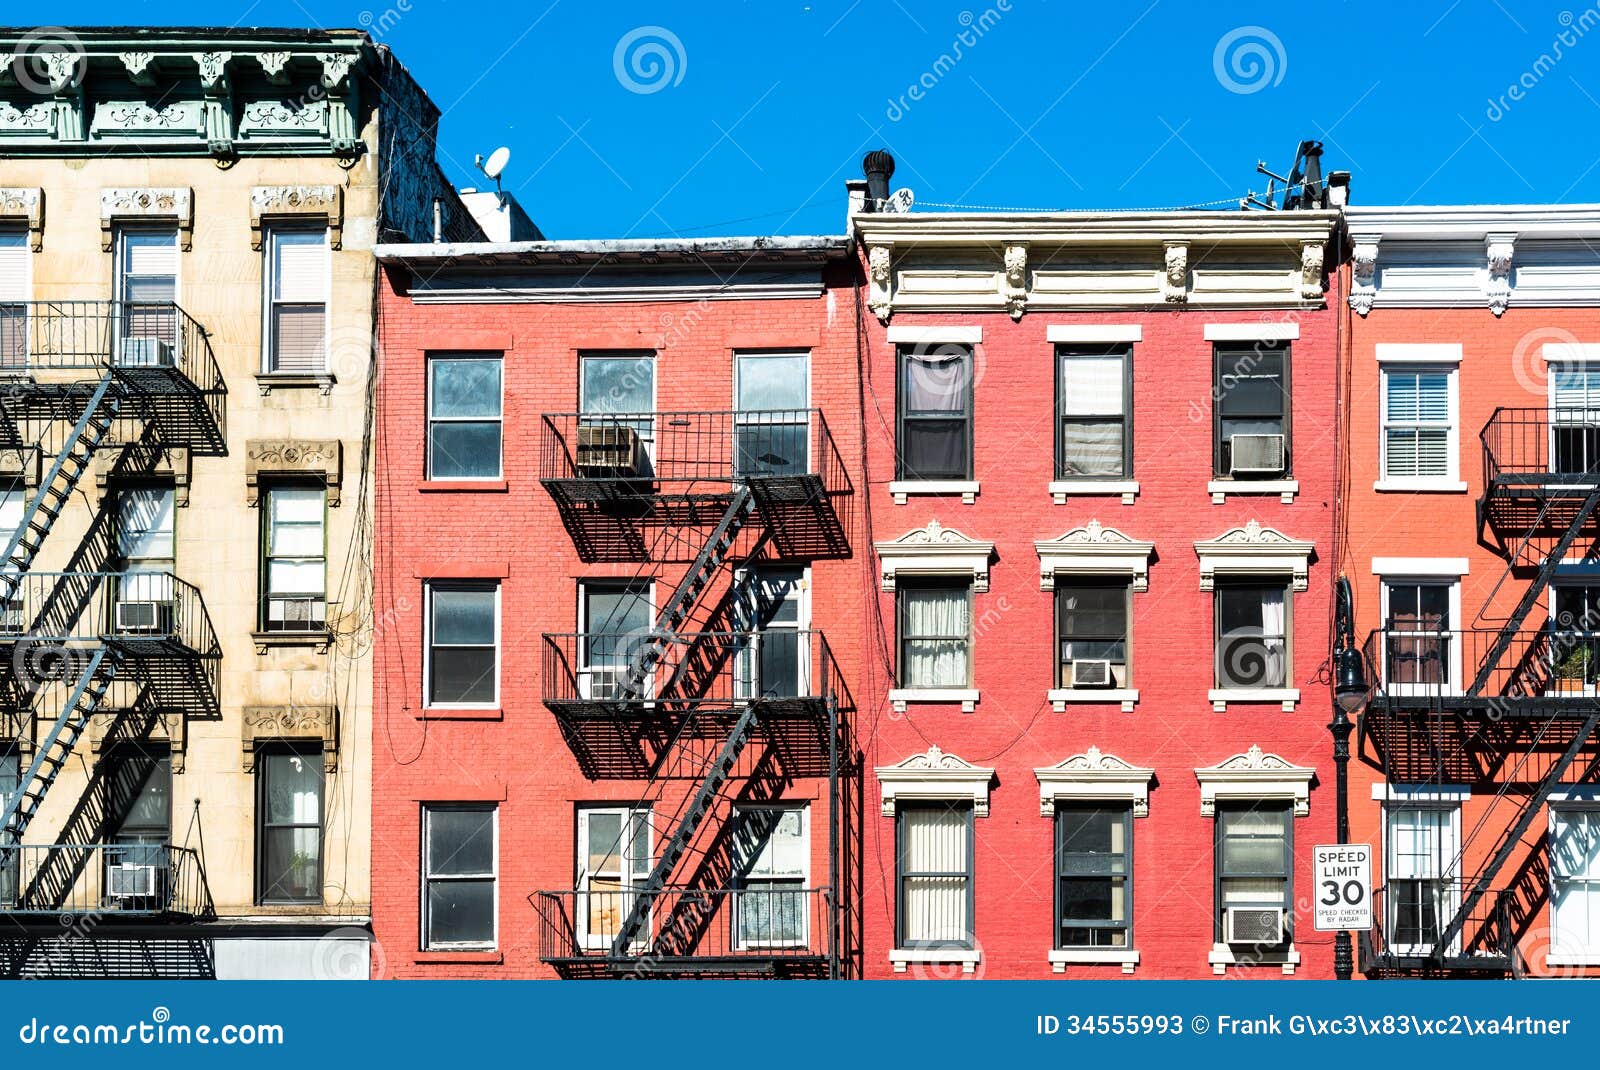 typical new york facades